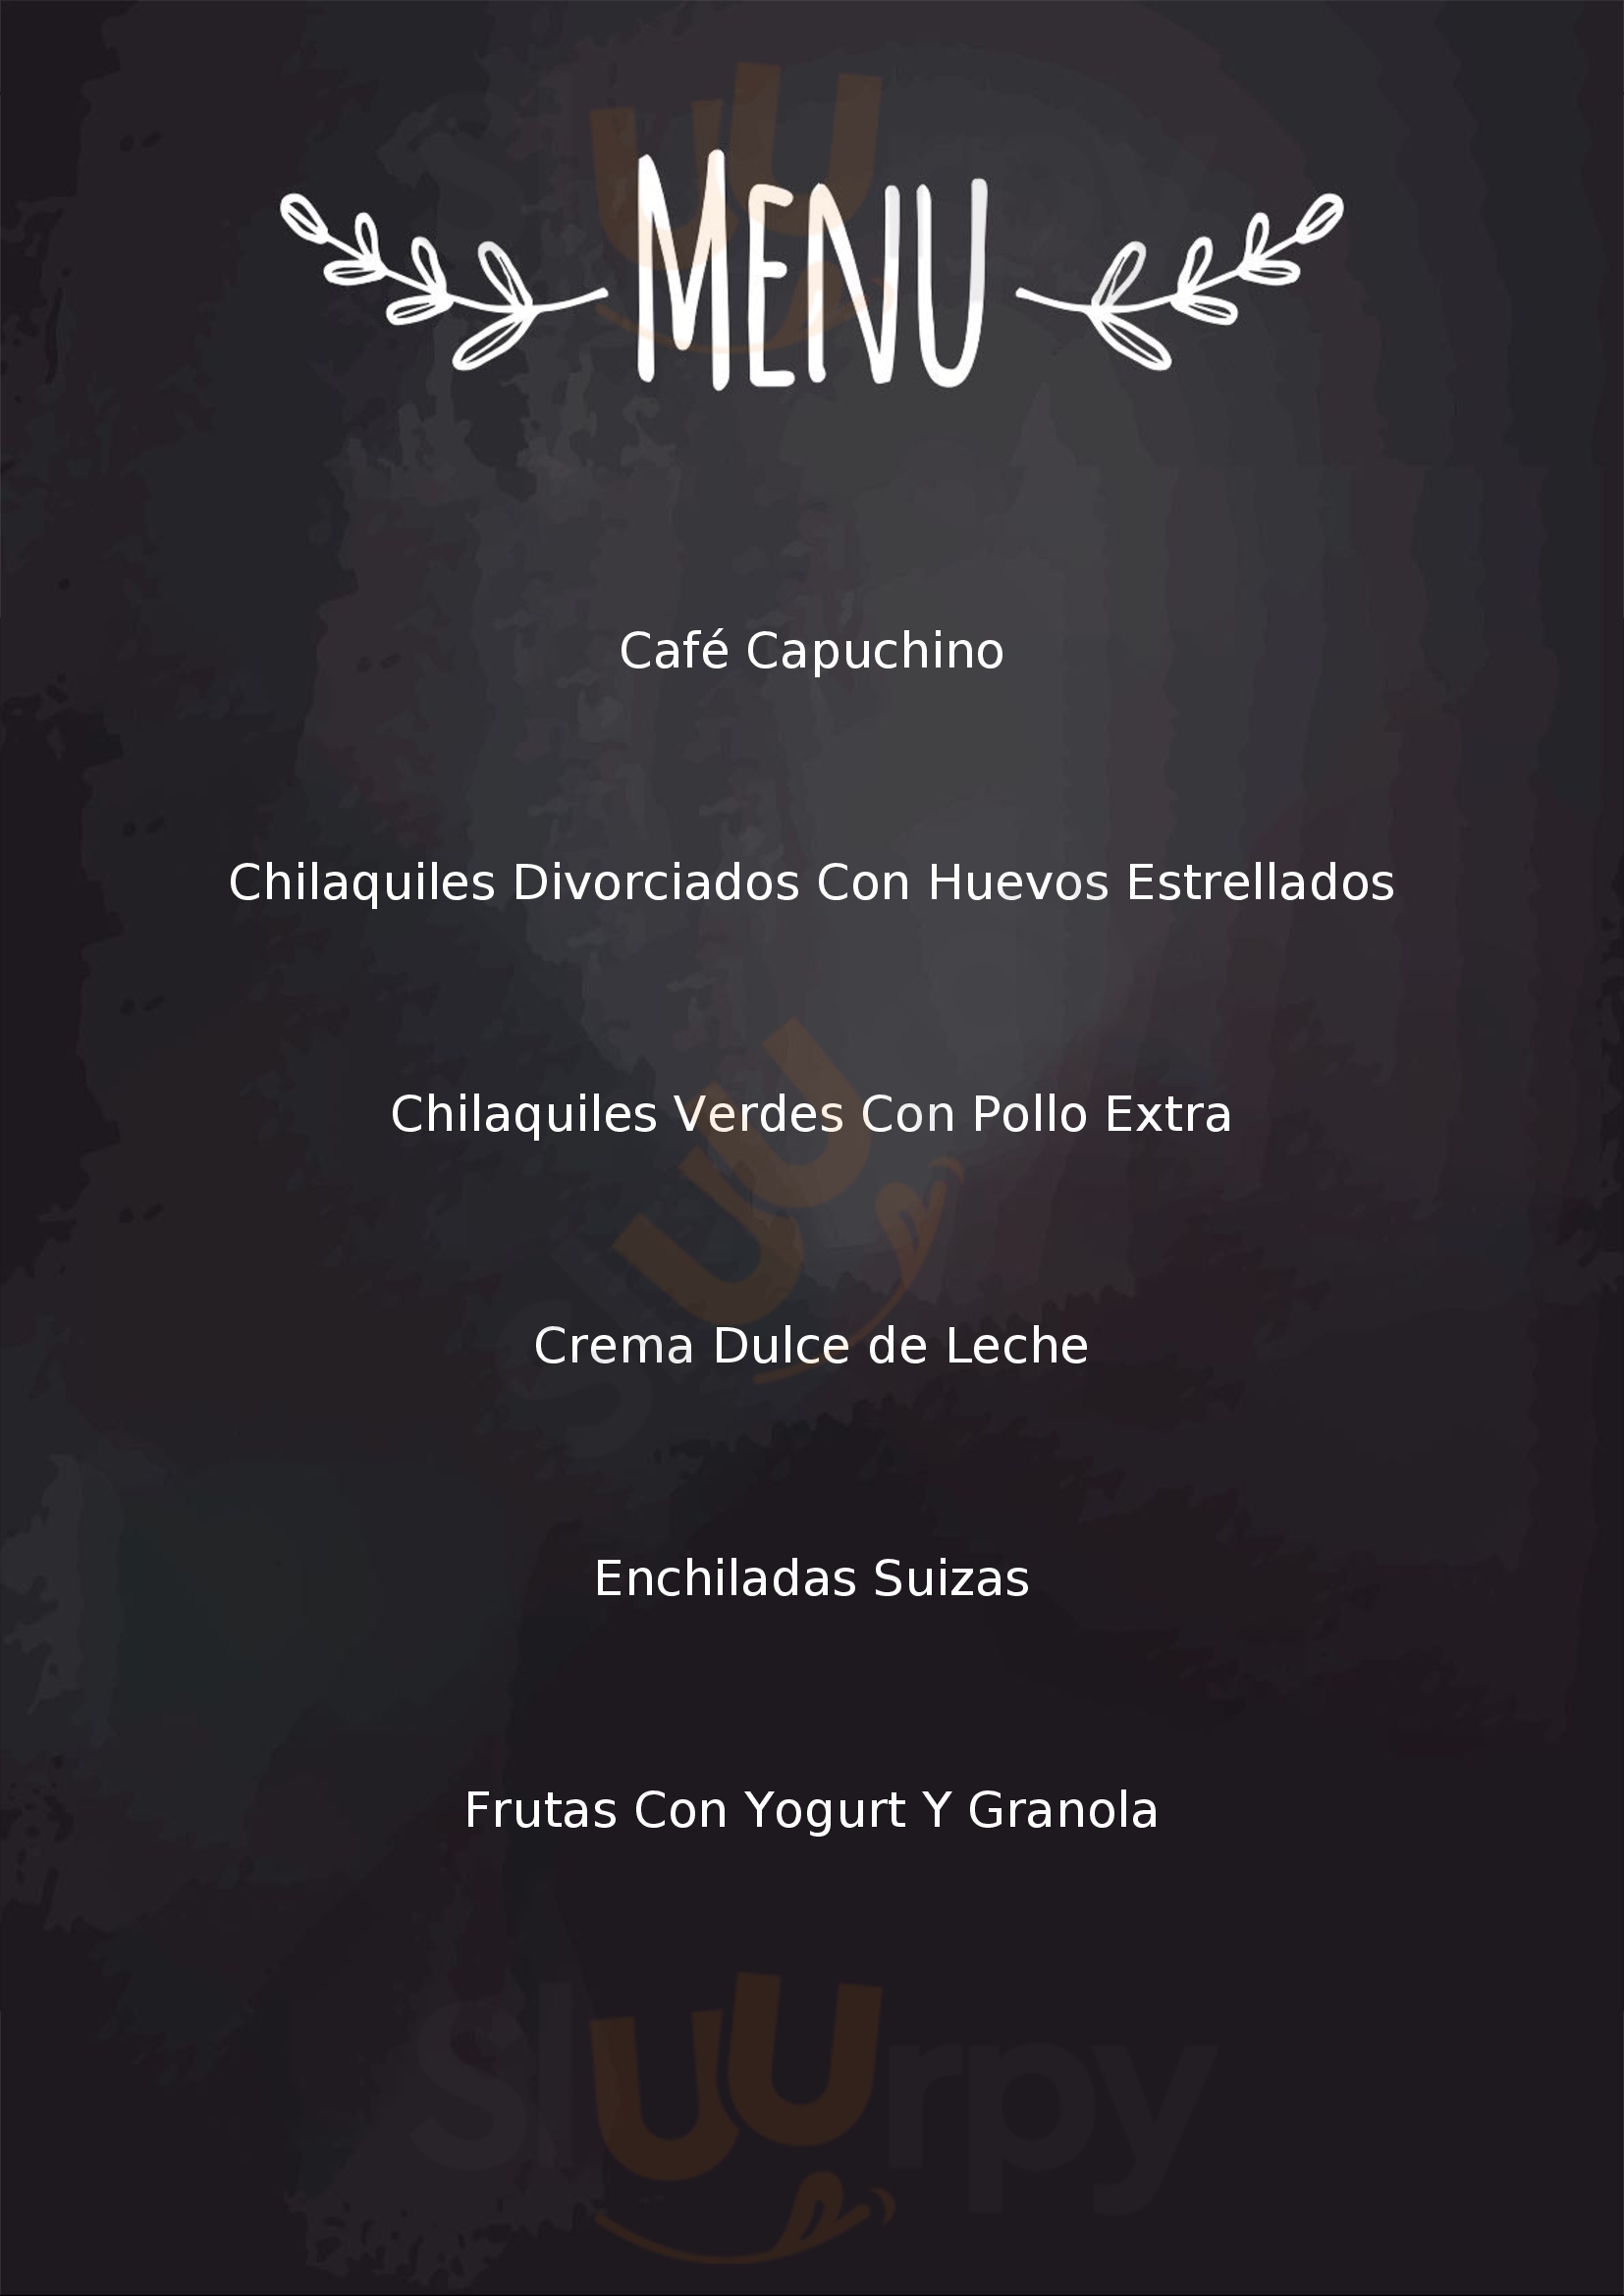 Ego Céntrico Restaurante Cancún Menu - 1